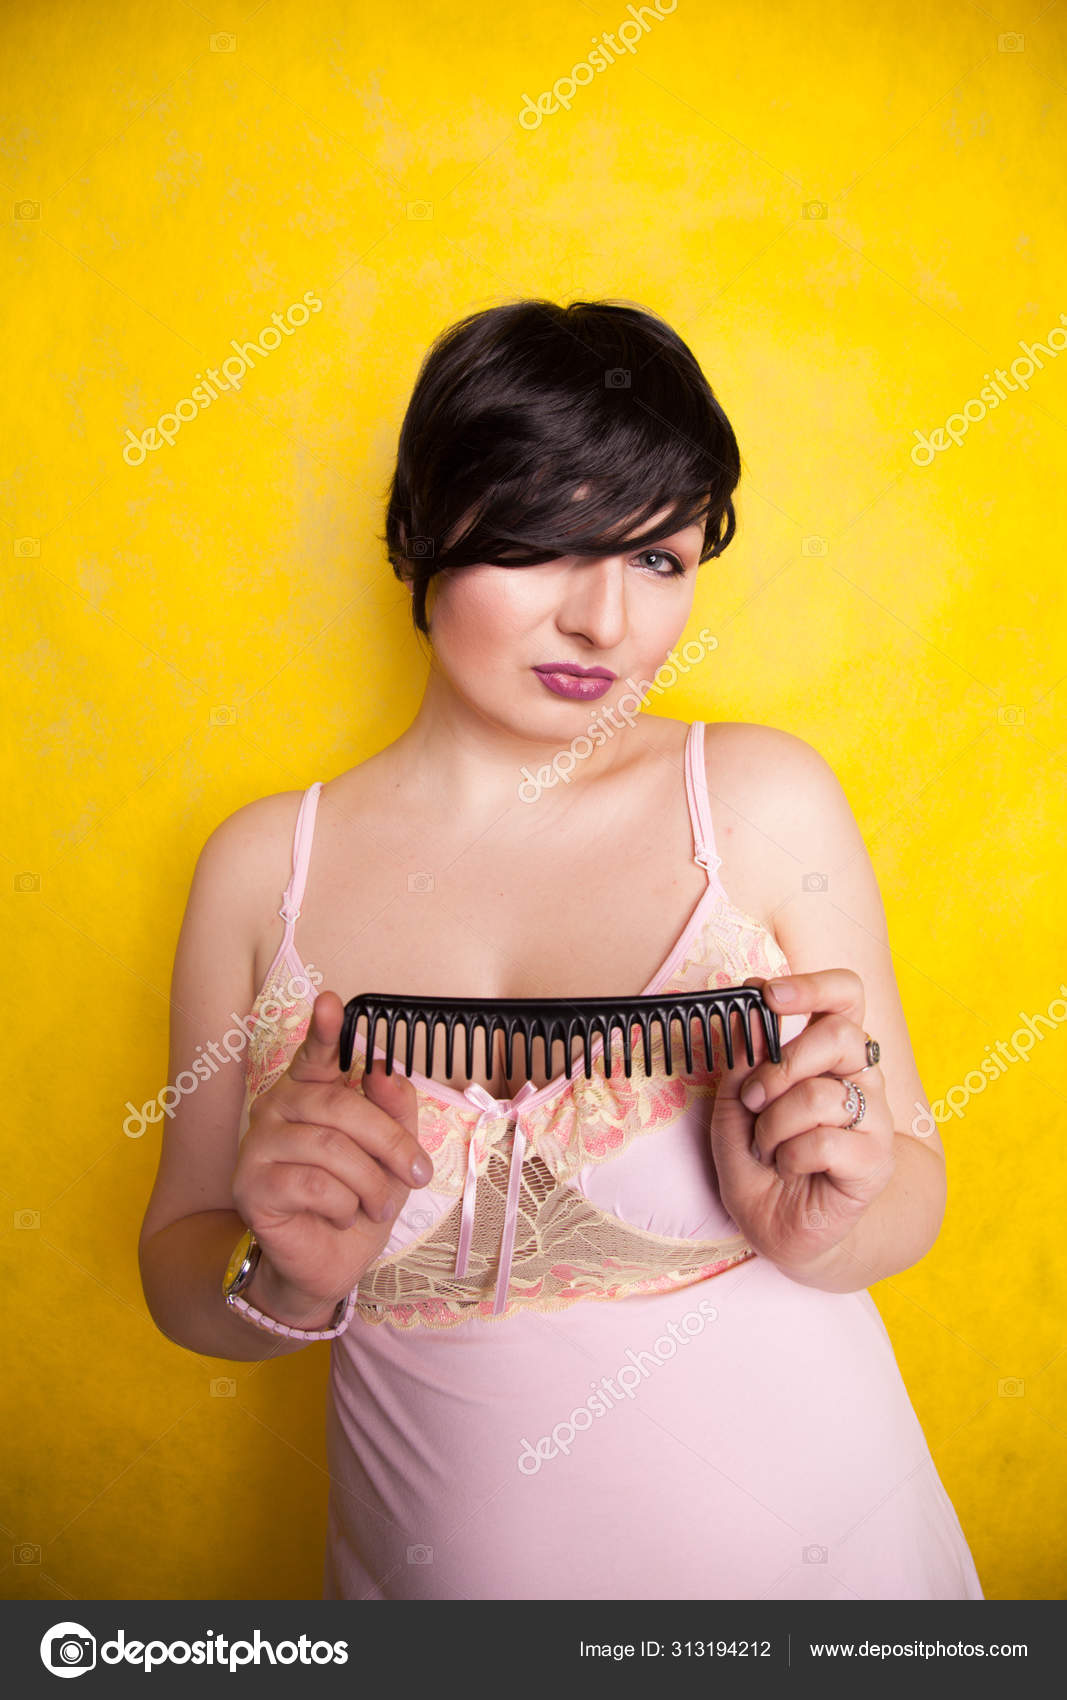 Secador de cabelo preto na mão de uma mulher em um fundo amarelo